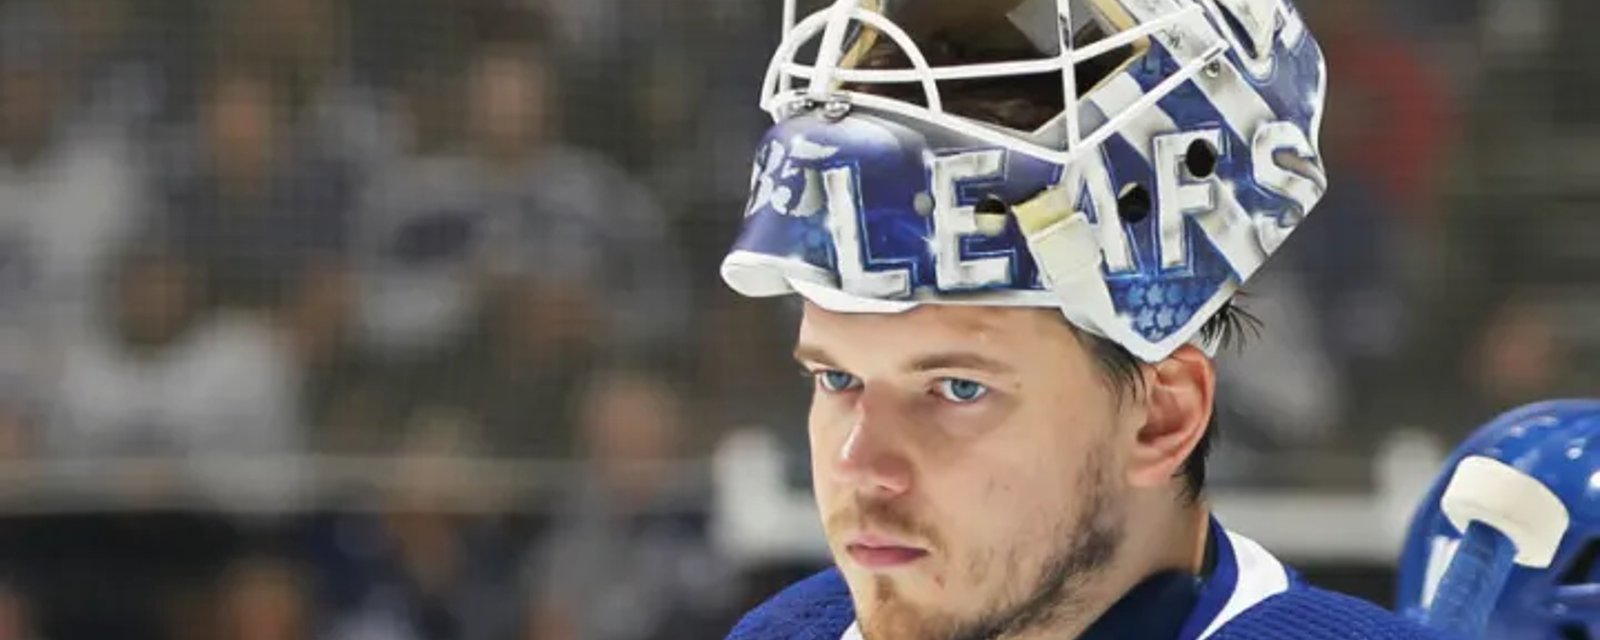 Critical update on Leafs goaltender Ilya Samsonov